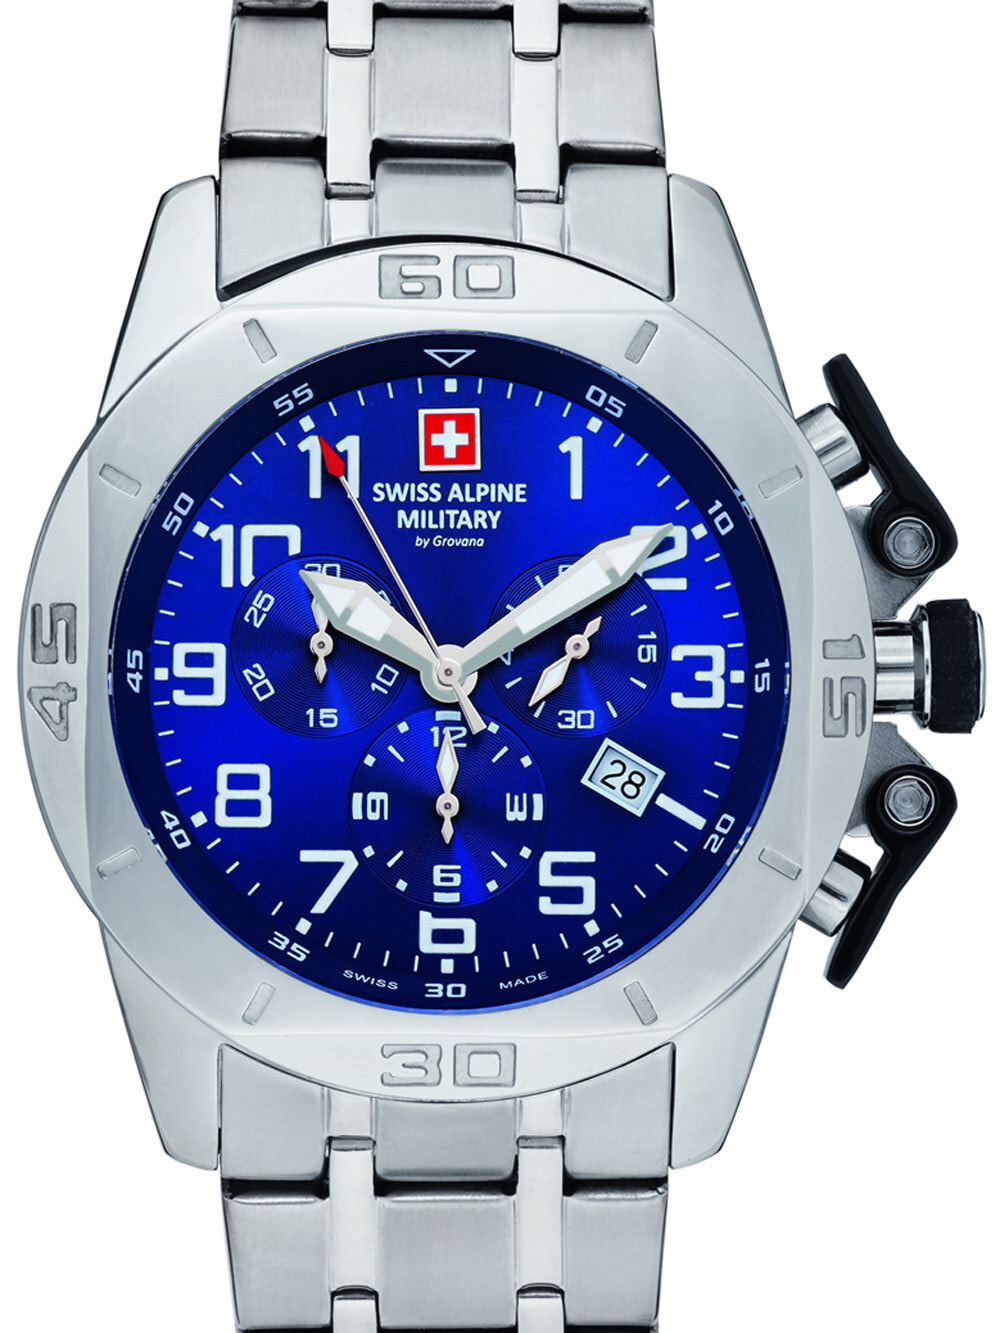 Мужские наручные часы с серебряным браслетом Swiss Alpine Military 7063.9135 chrono 45mm 10ATM